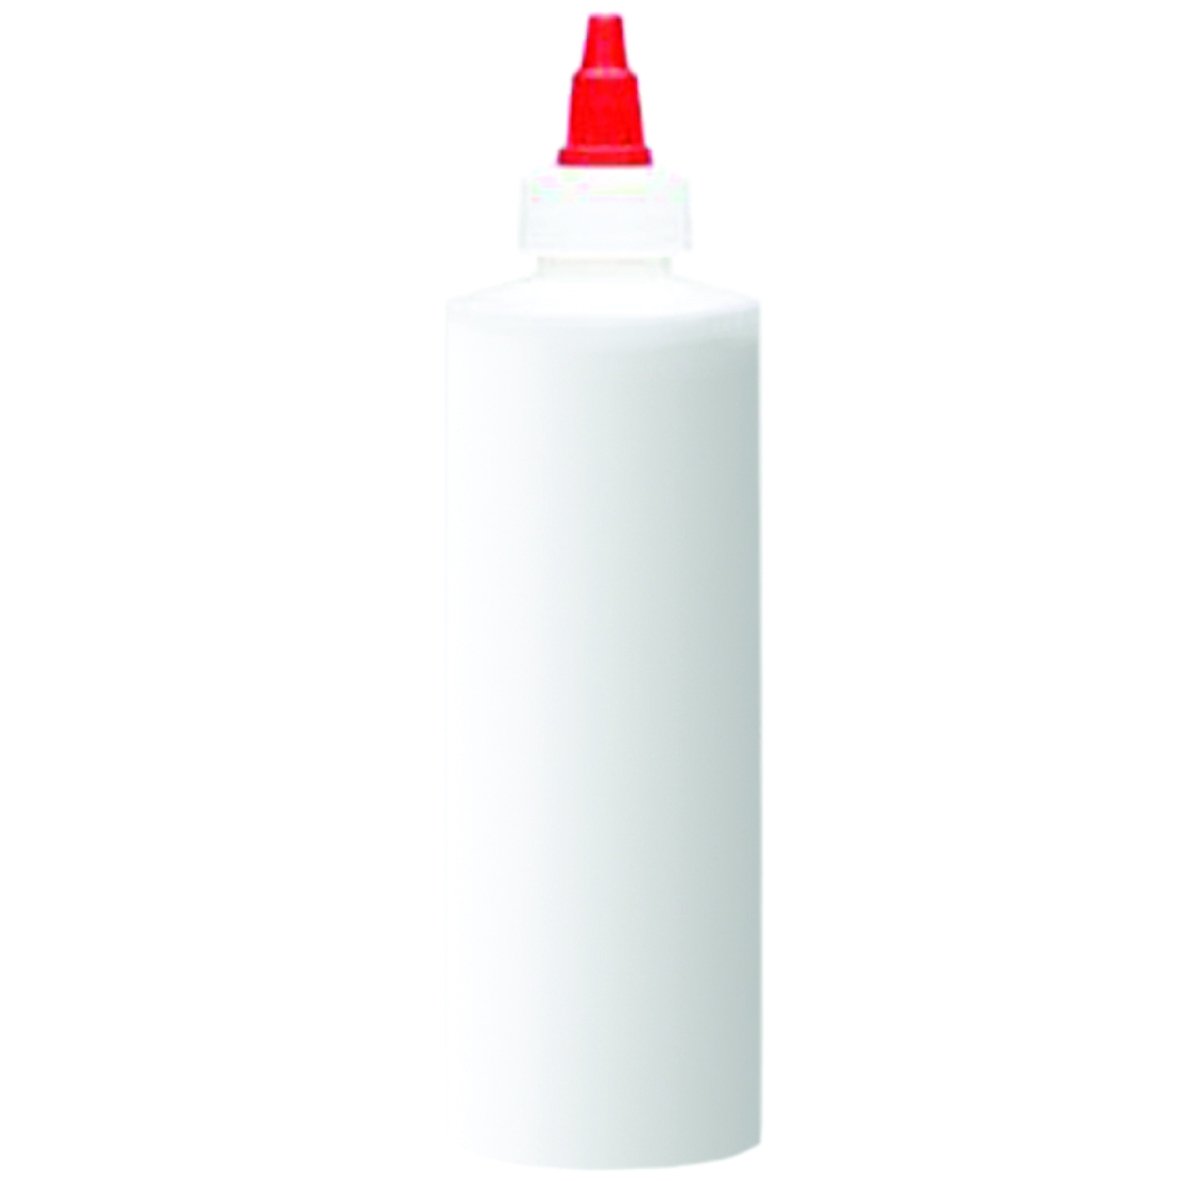 Empty Plastic Bottle With Cap No Label & label 8 oz - Premier Nail Supply 